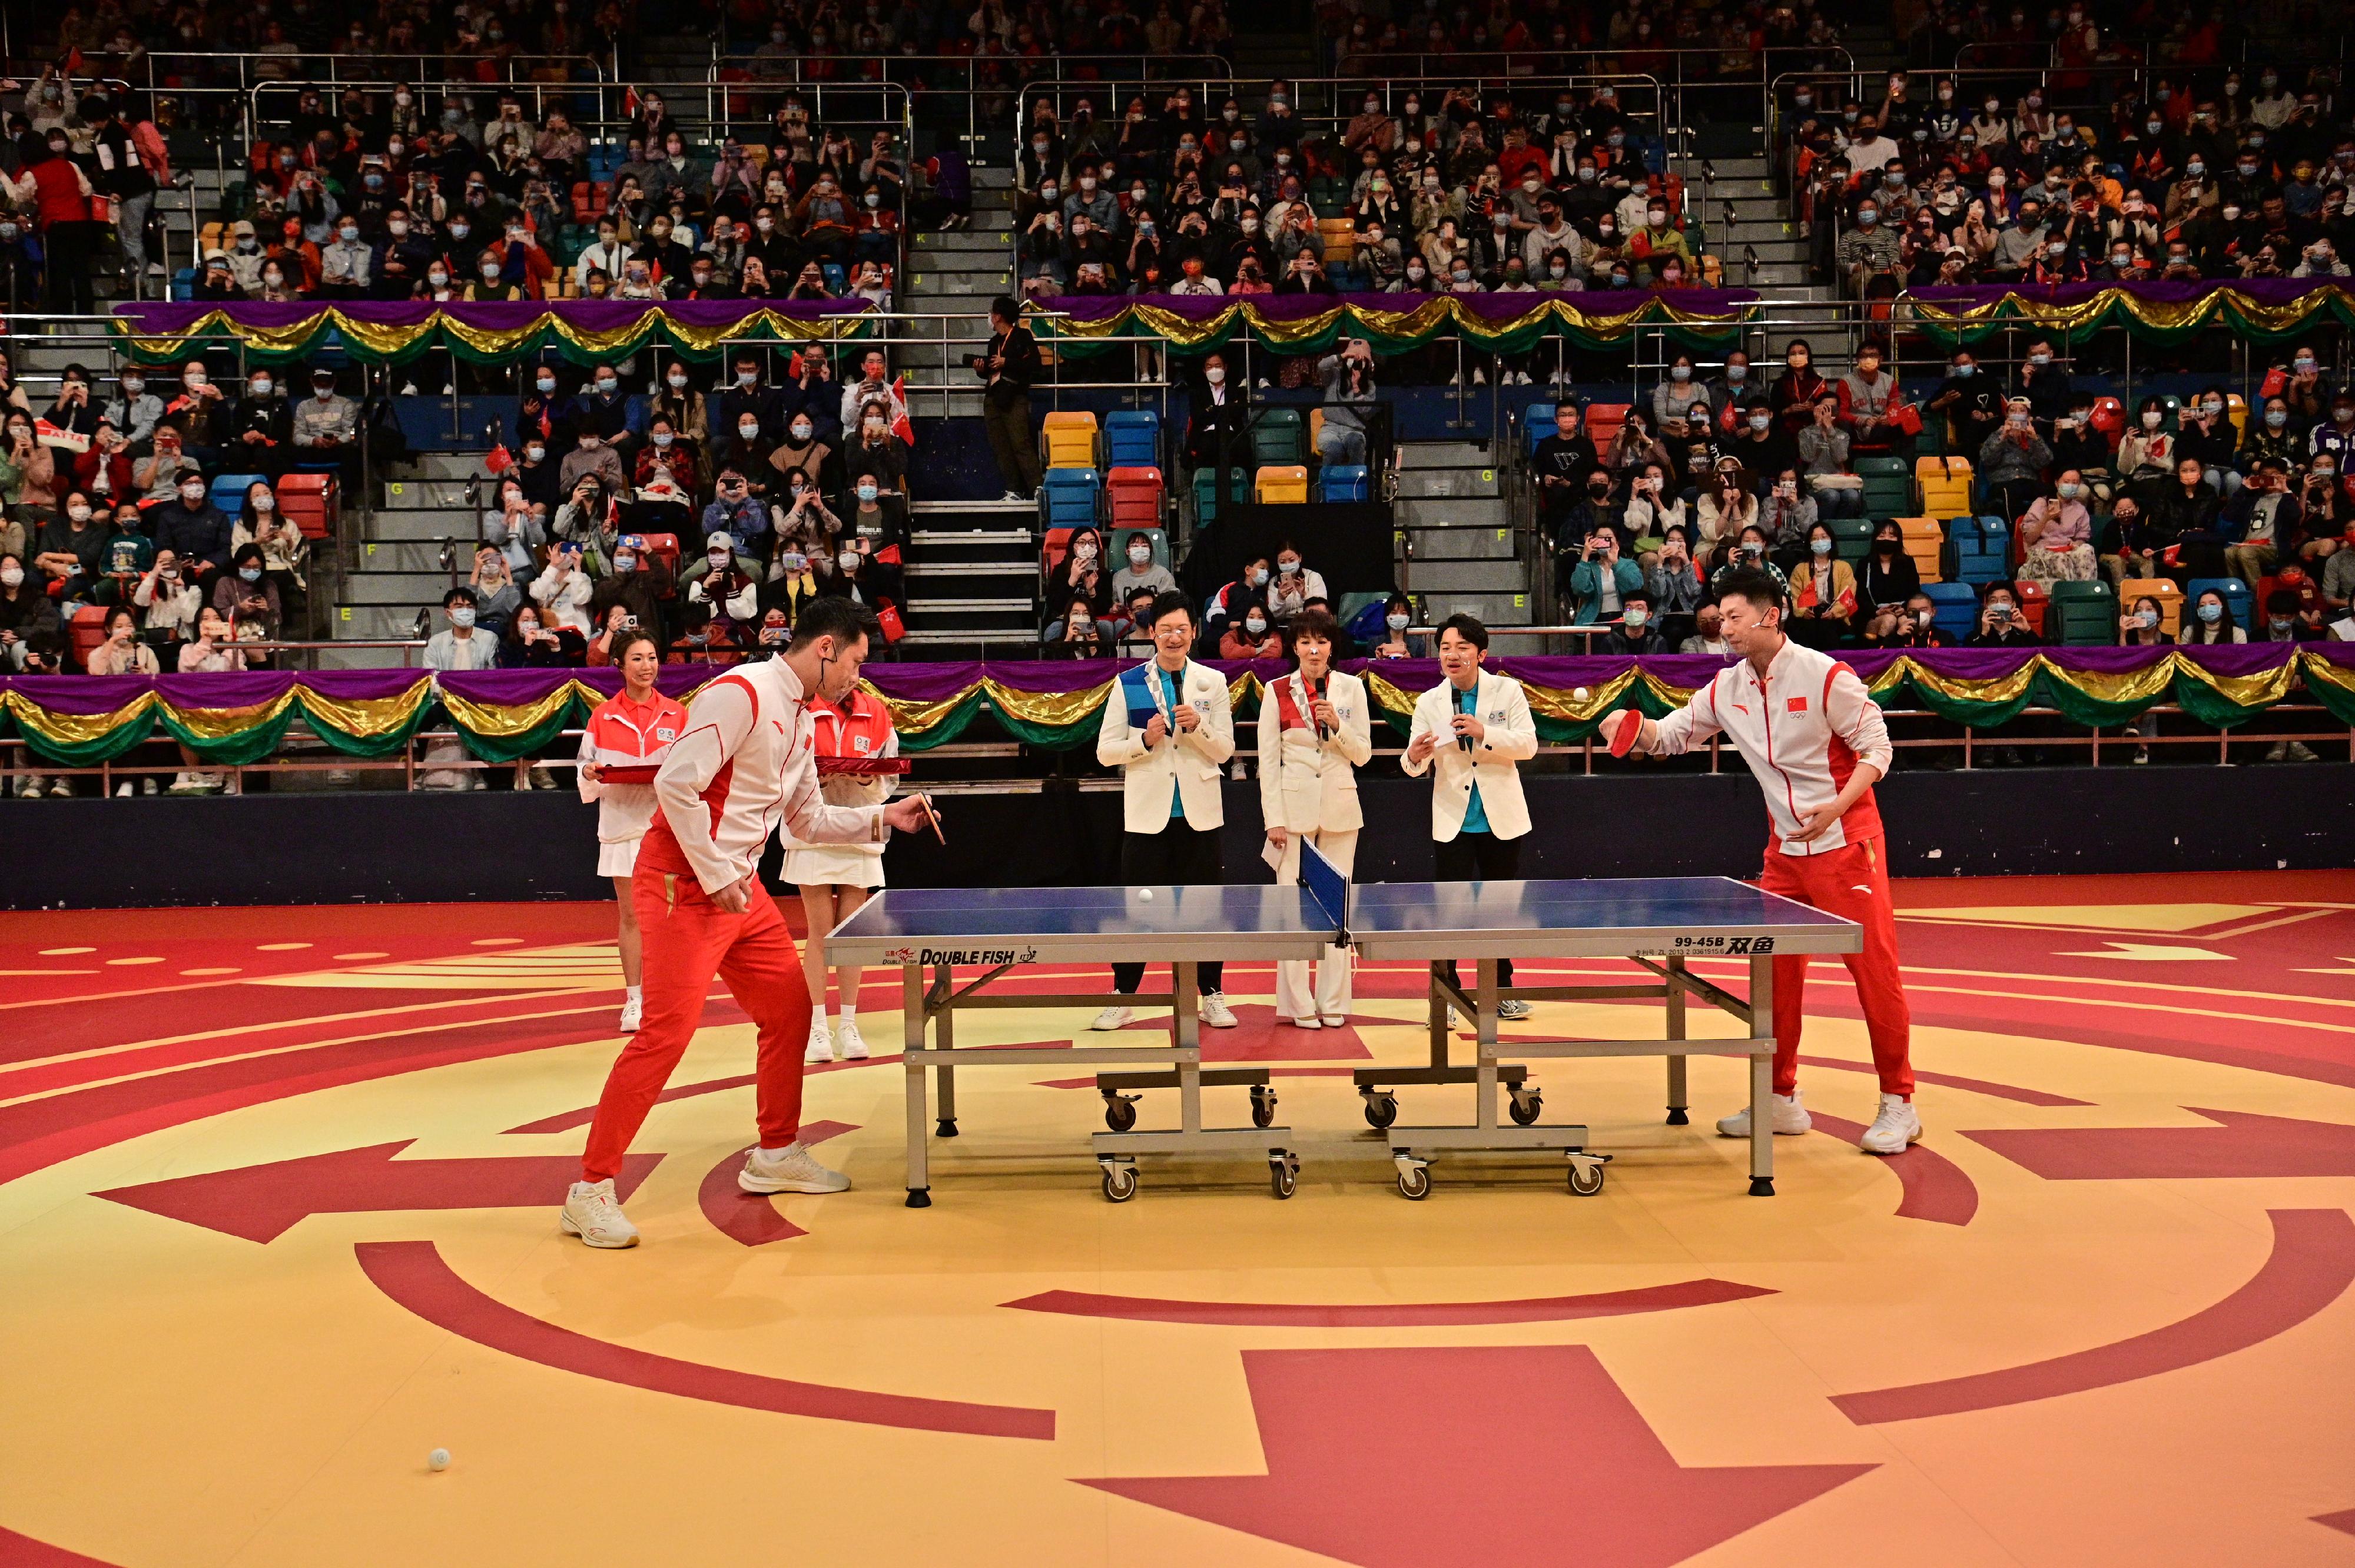 東京2020奧運會內地奧運健兒代表團今日（十二月四日）下午出席在灣仔伊利沙伯體育館舉行的「奧運健兒大匯演」。圖示內地乒乓球運動員馬龍（前排右）和許昕（前排左）參與競技比試。